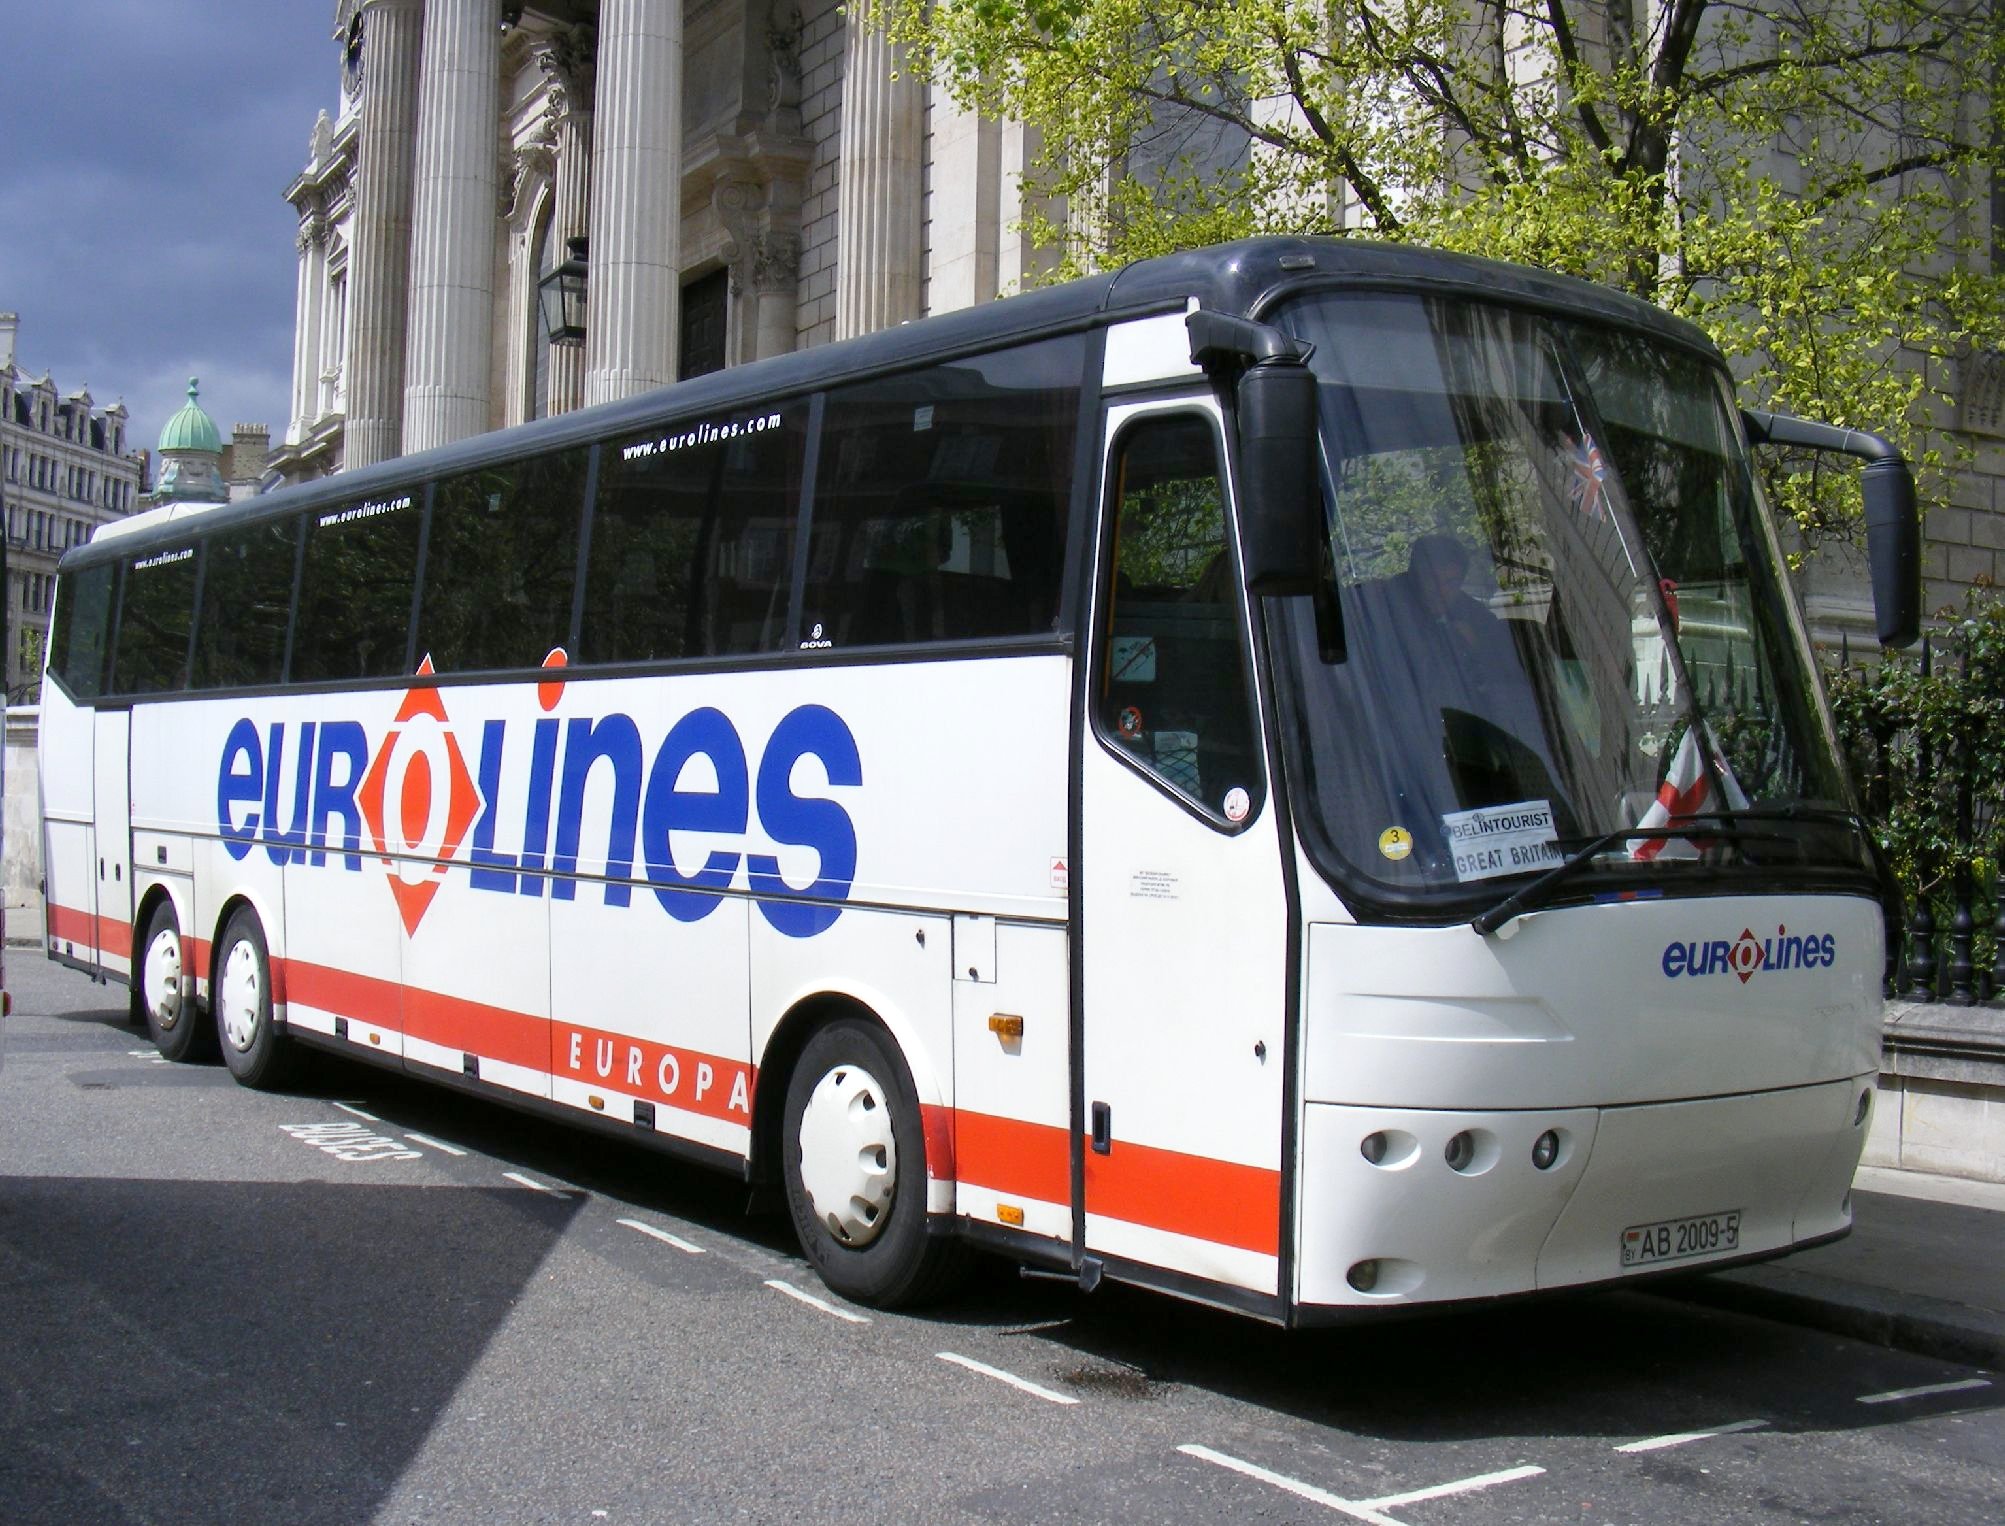 Káº¿t quáº£ hÃ¬nh áº£nh cho eurolines bus